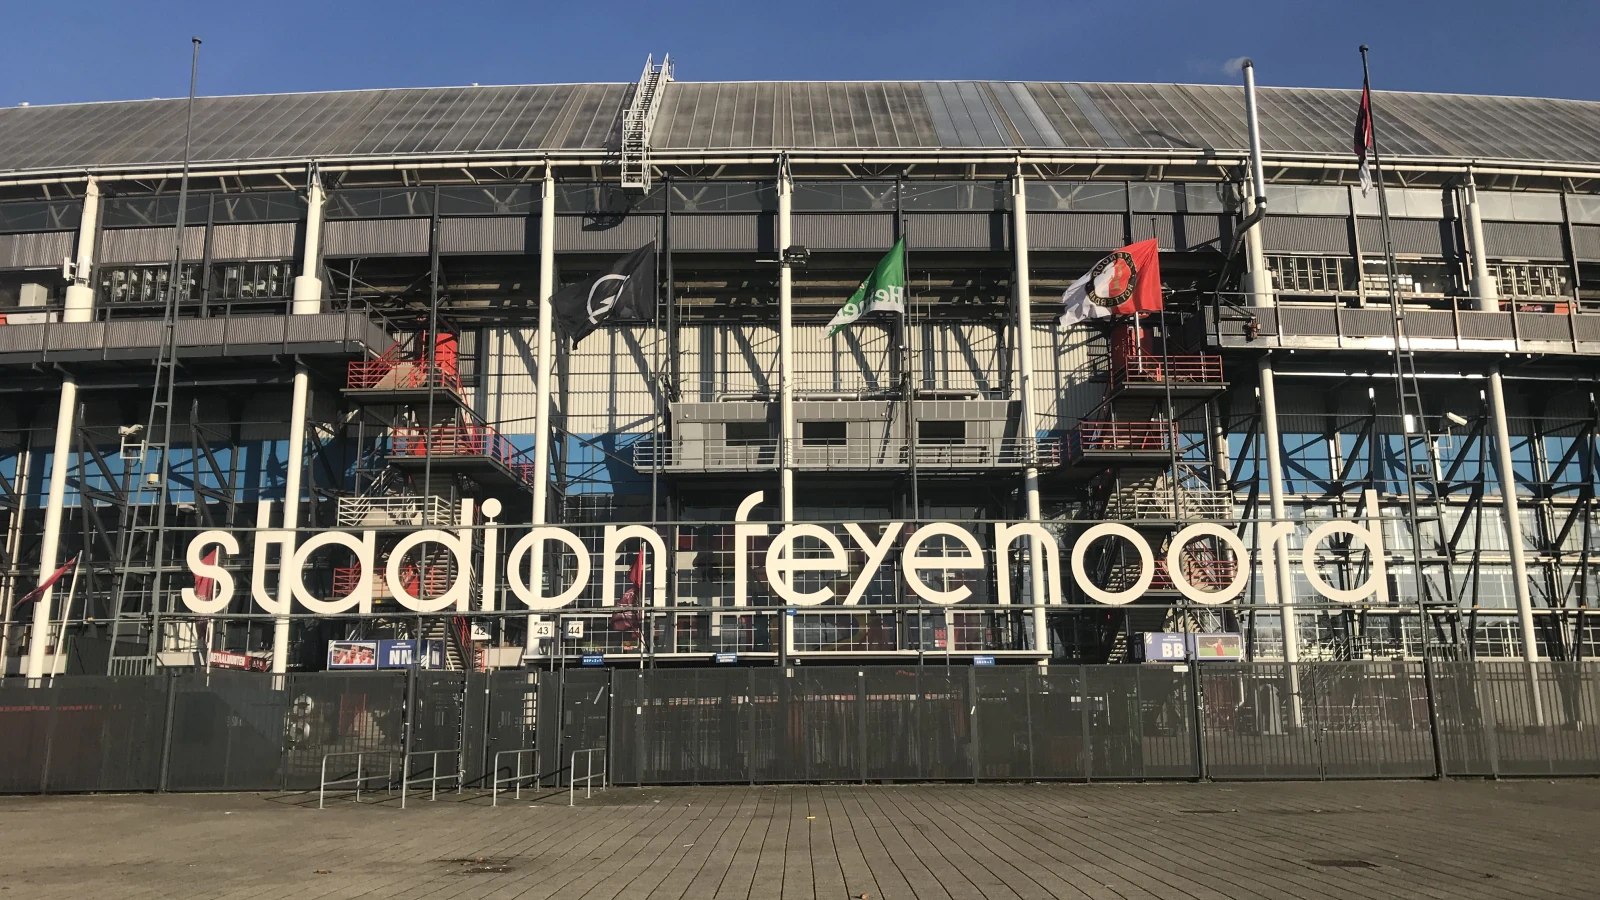 Jaarcijfers bekend, Feyenoord boekt bescheiden bedrijfsresultaat